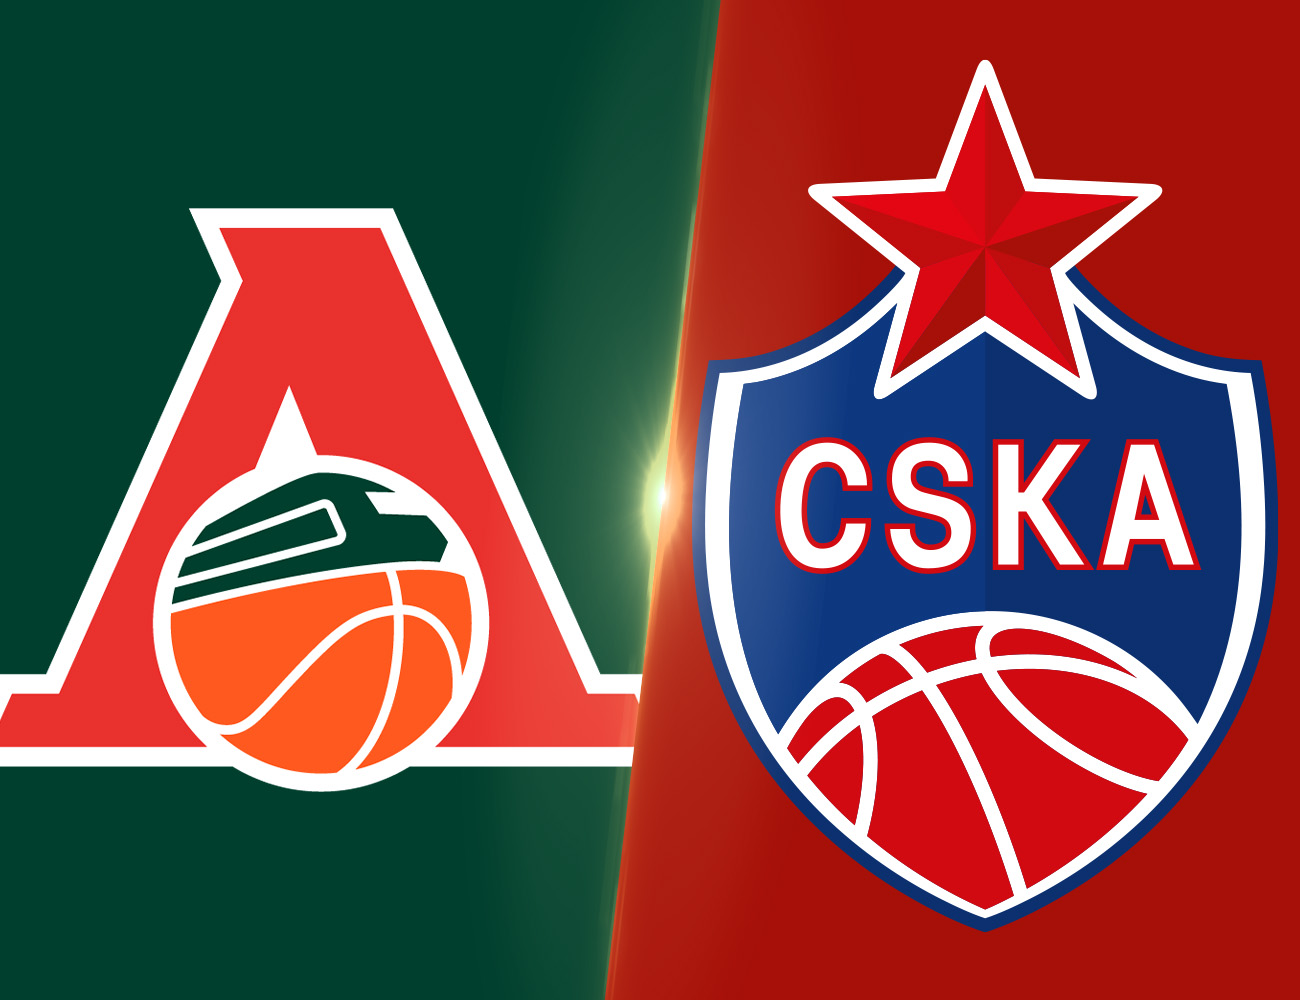 Game of the Week. Lokomotiv Kuban vs CSKA